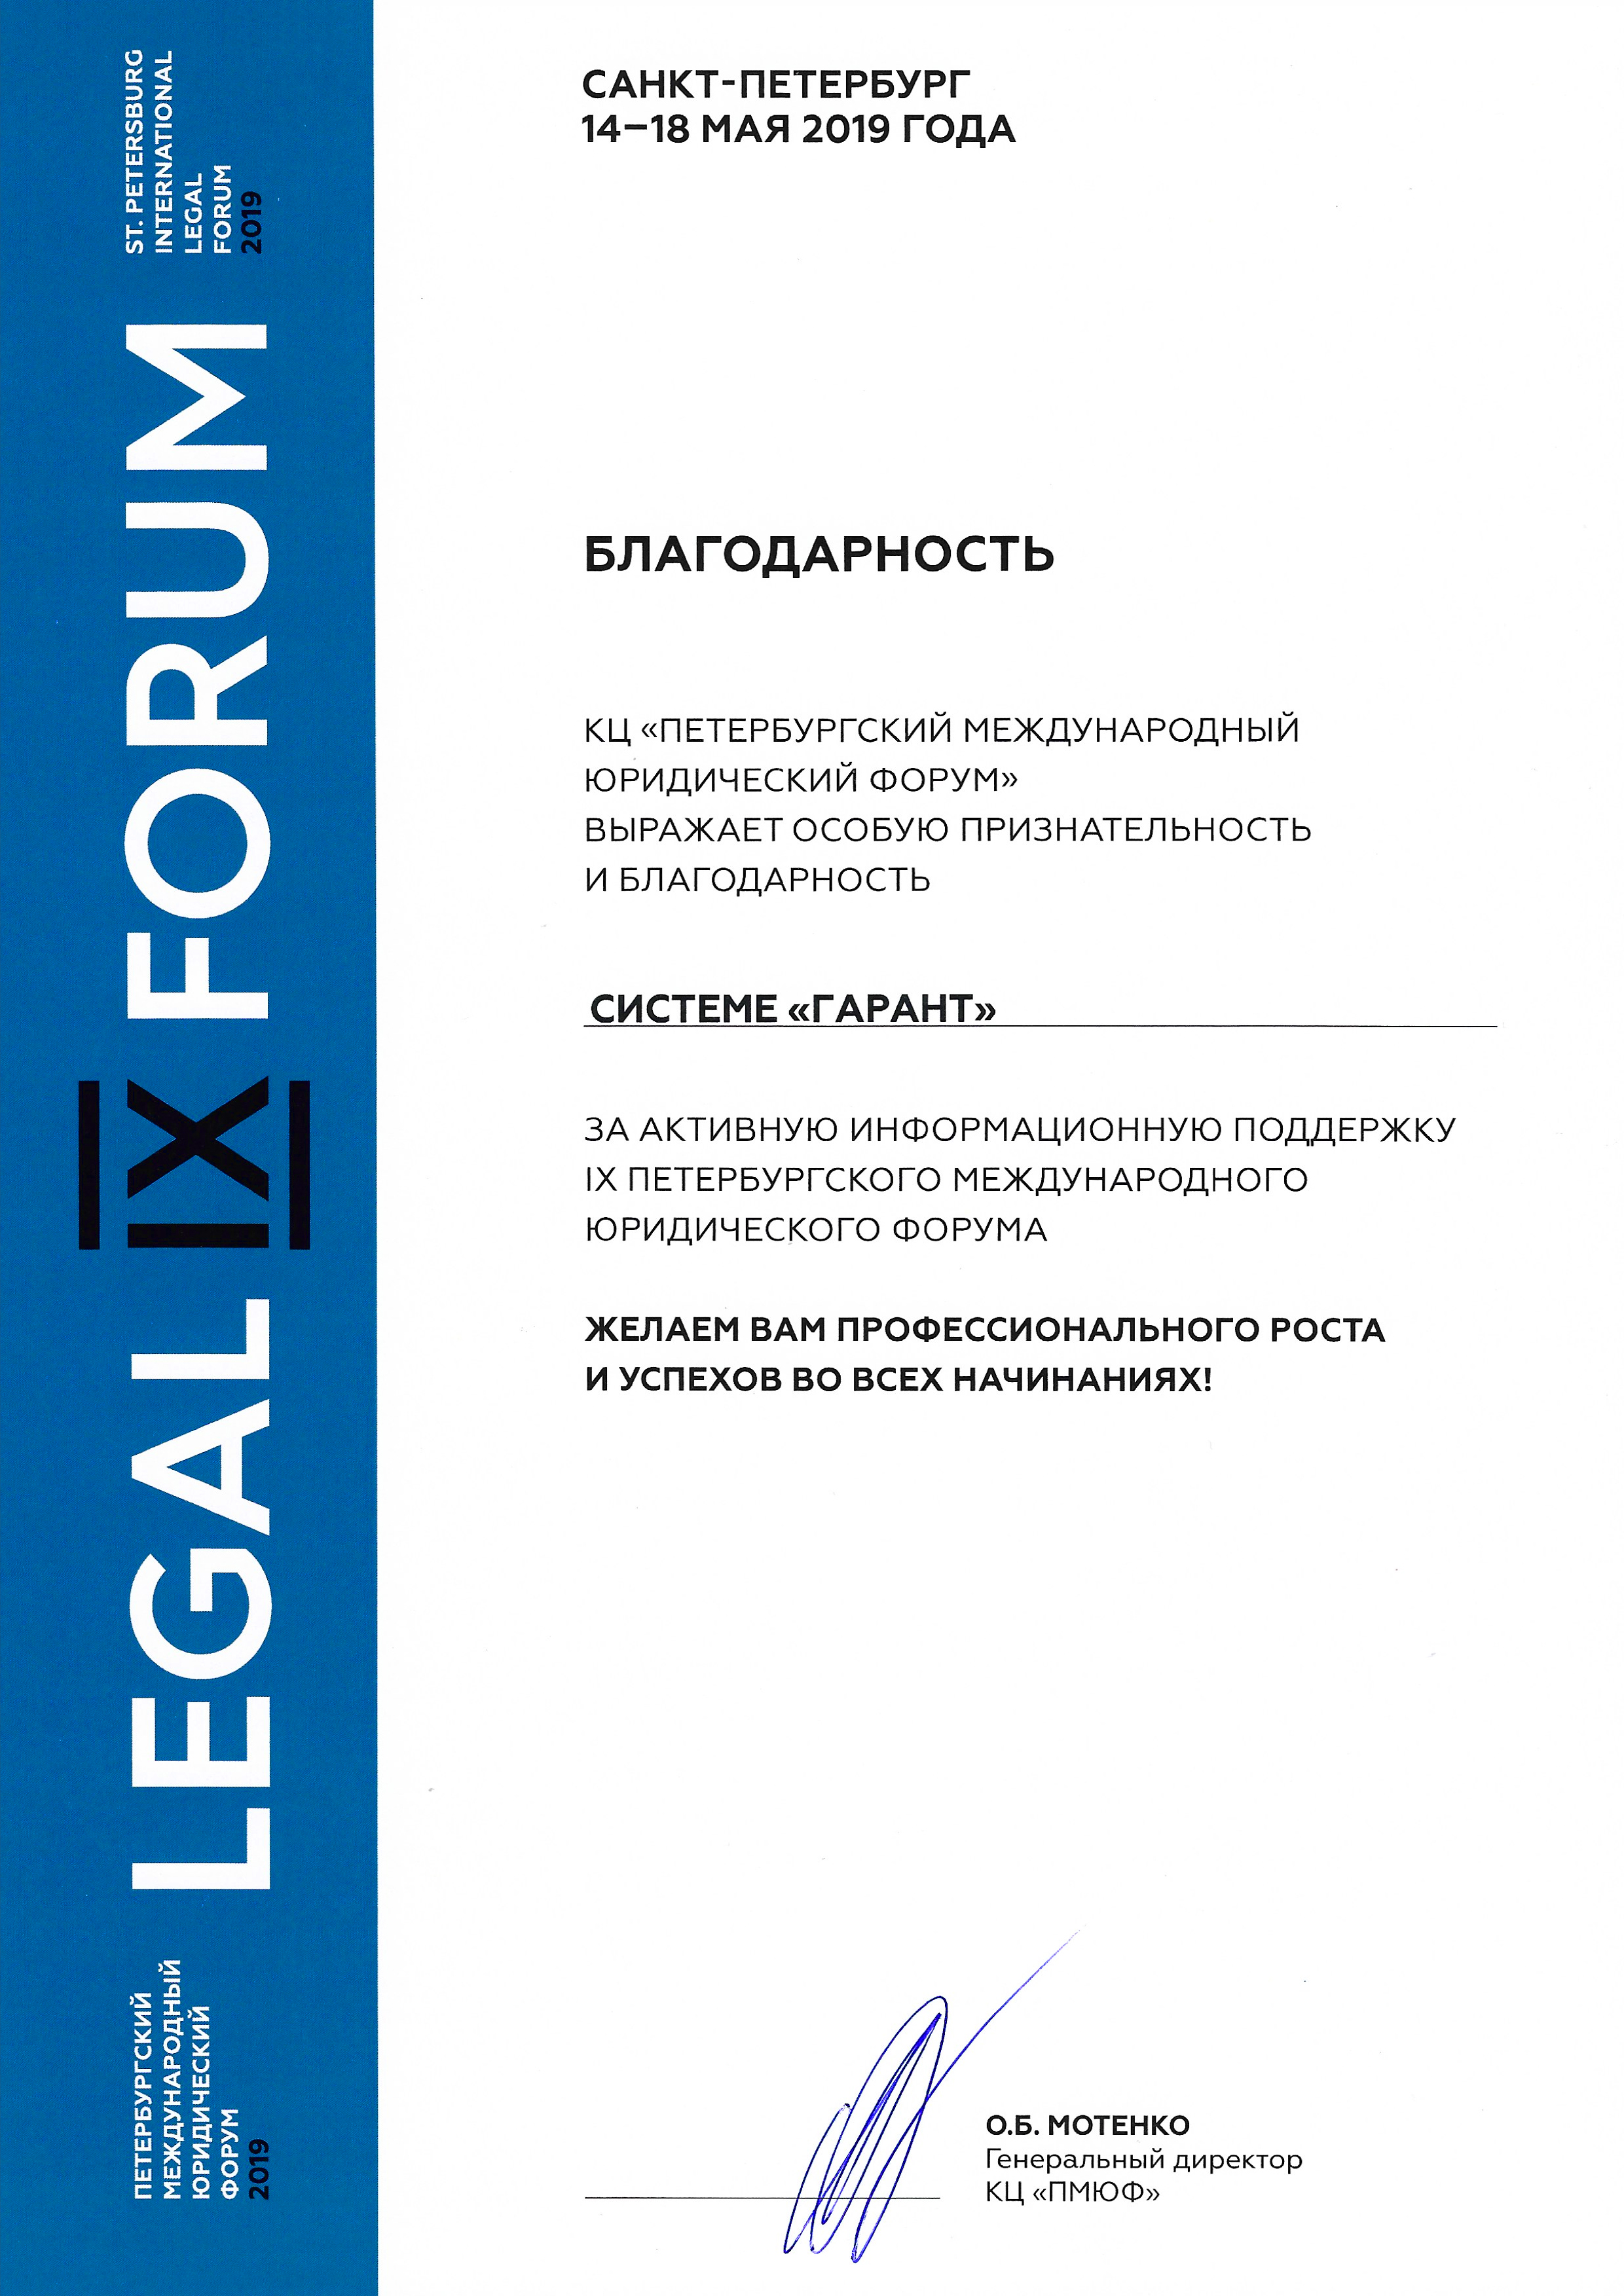 Благодарность за активную информационную поддержку IX Петербургского международного юридического форума